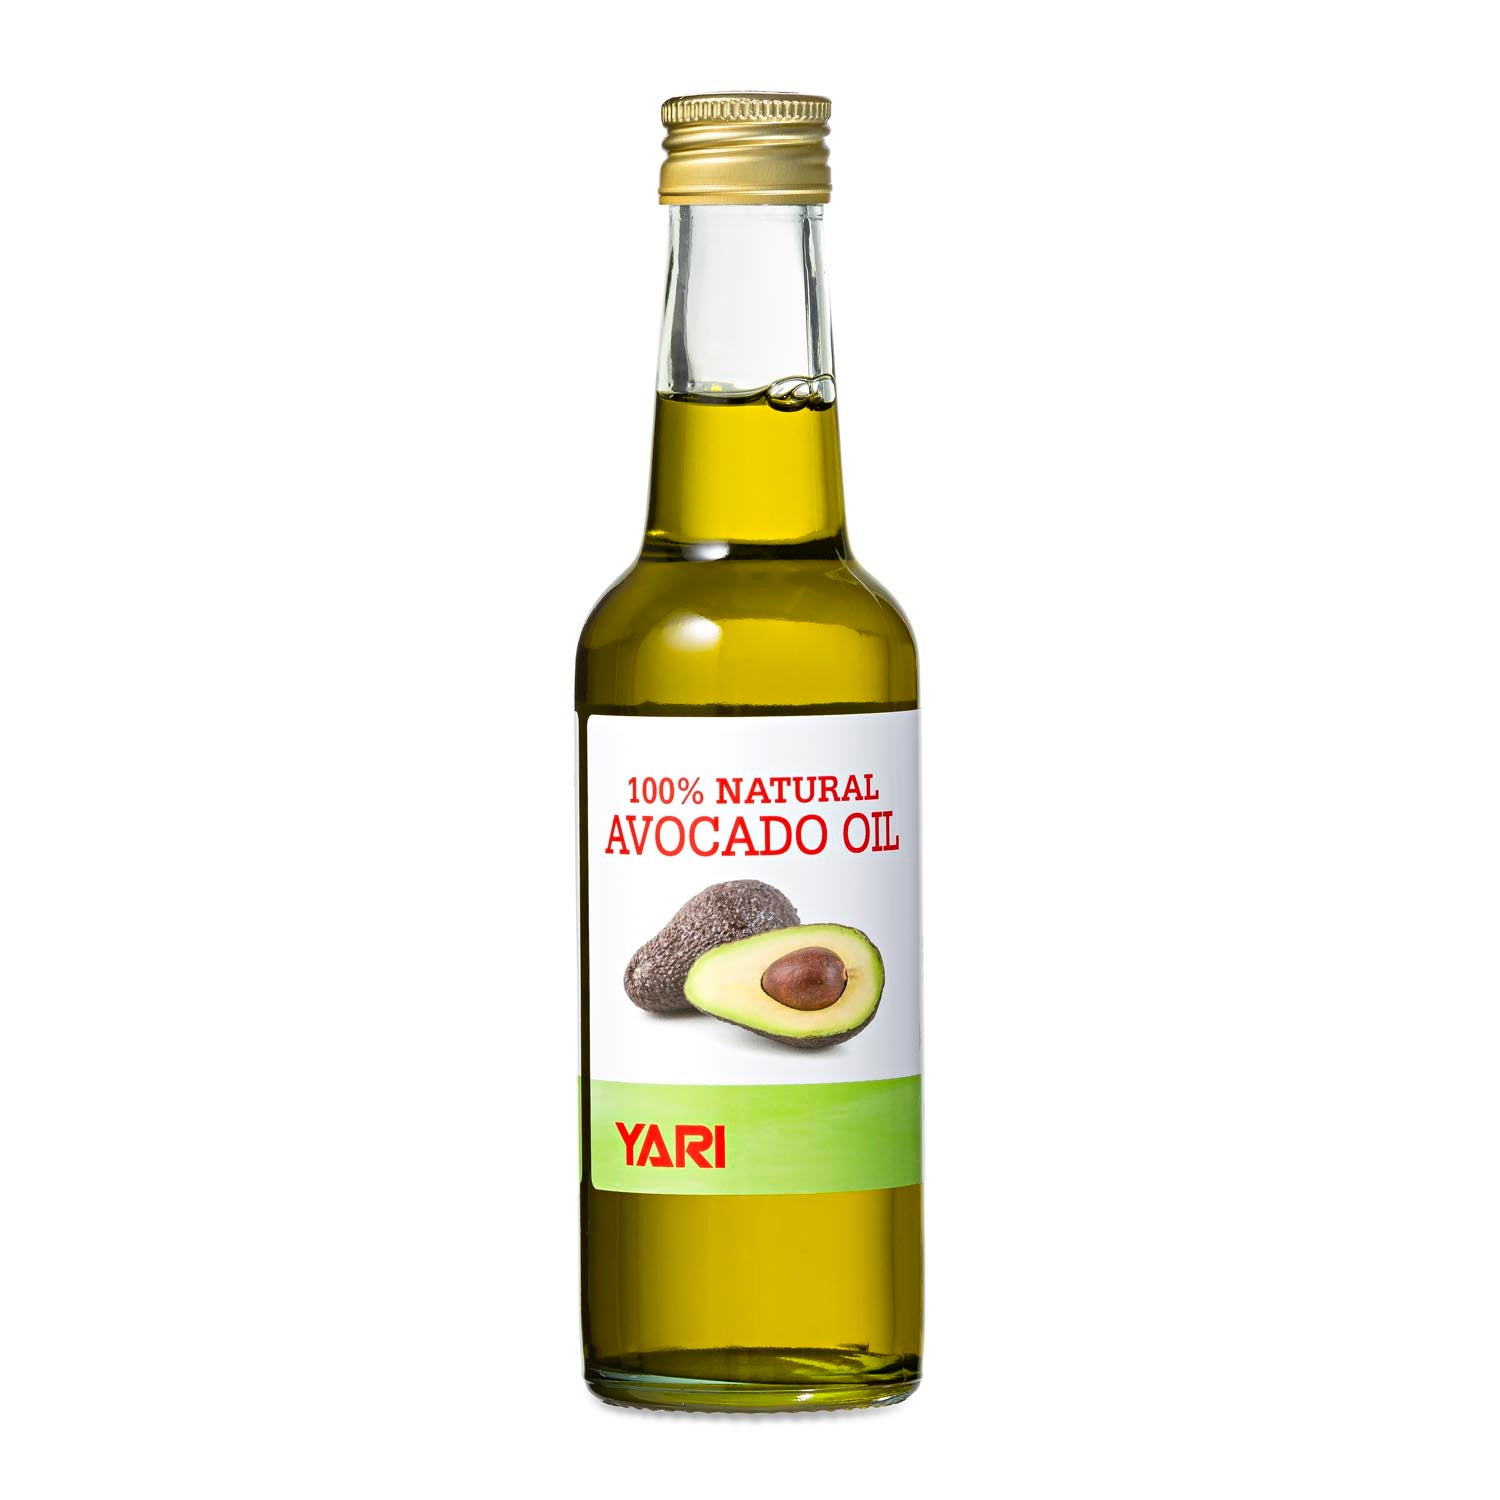 Yari - 100% Natural Avocado Oil 250ml